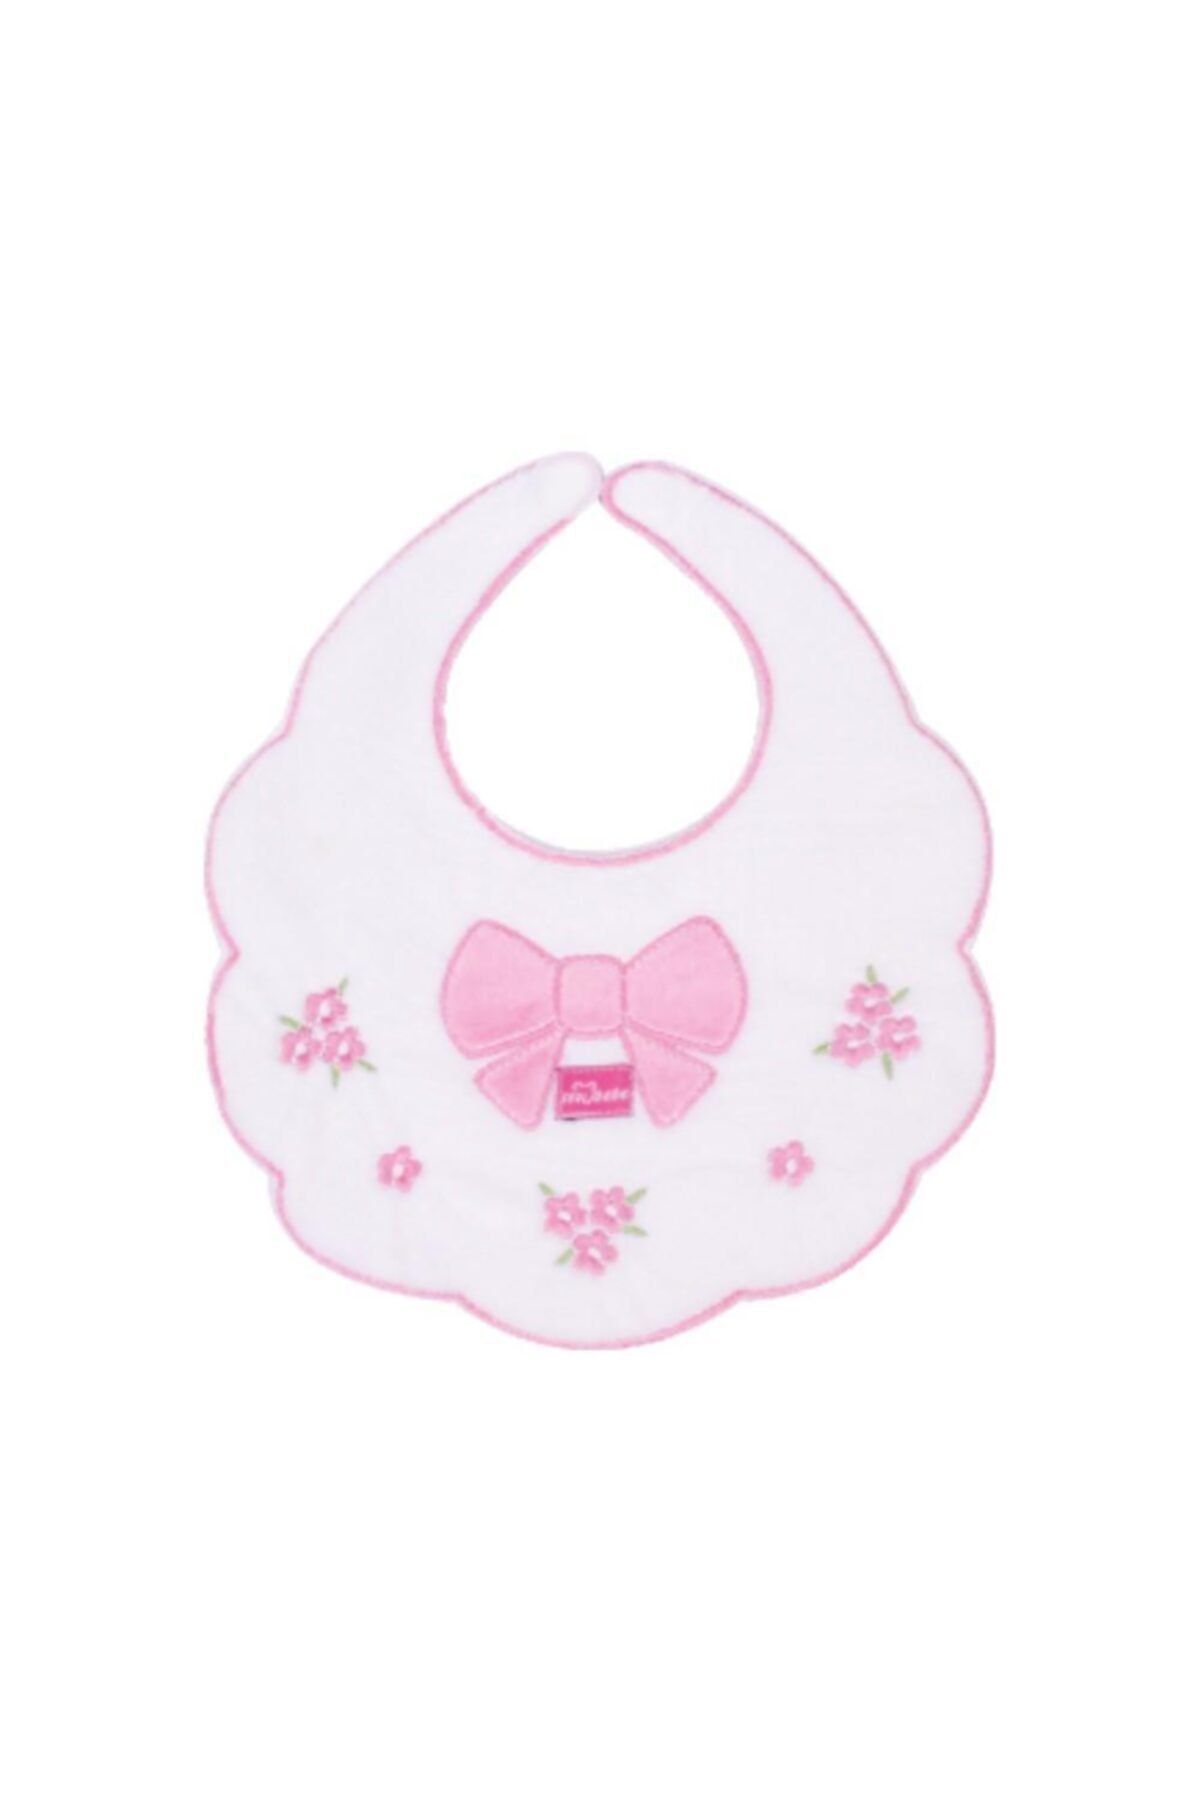 Sevi Bebe Piti Çiçek Mama Önlüğü Art-28 Beyaz